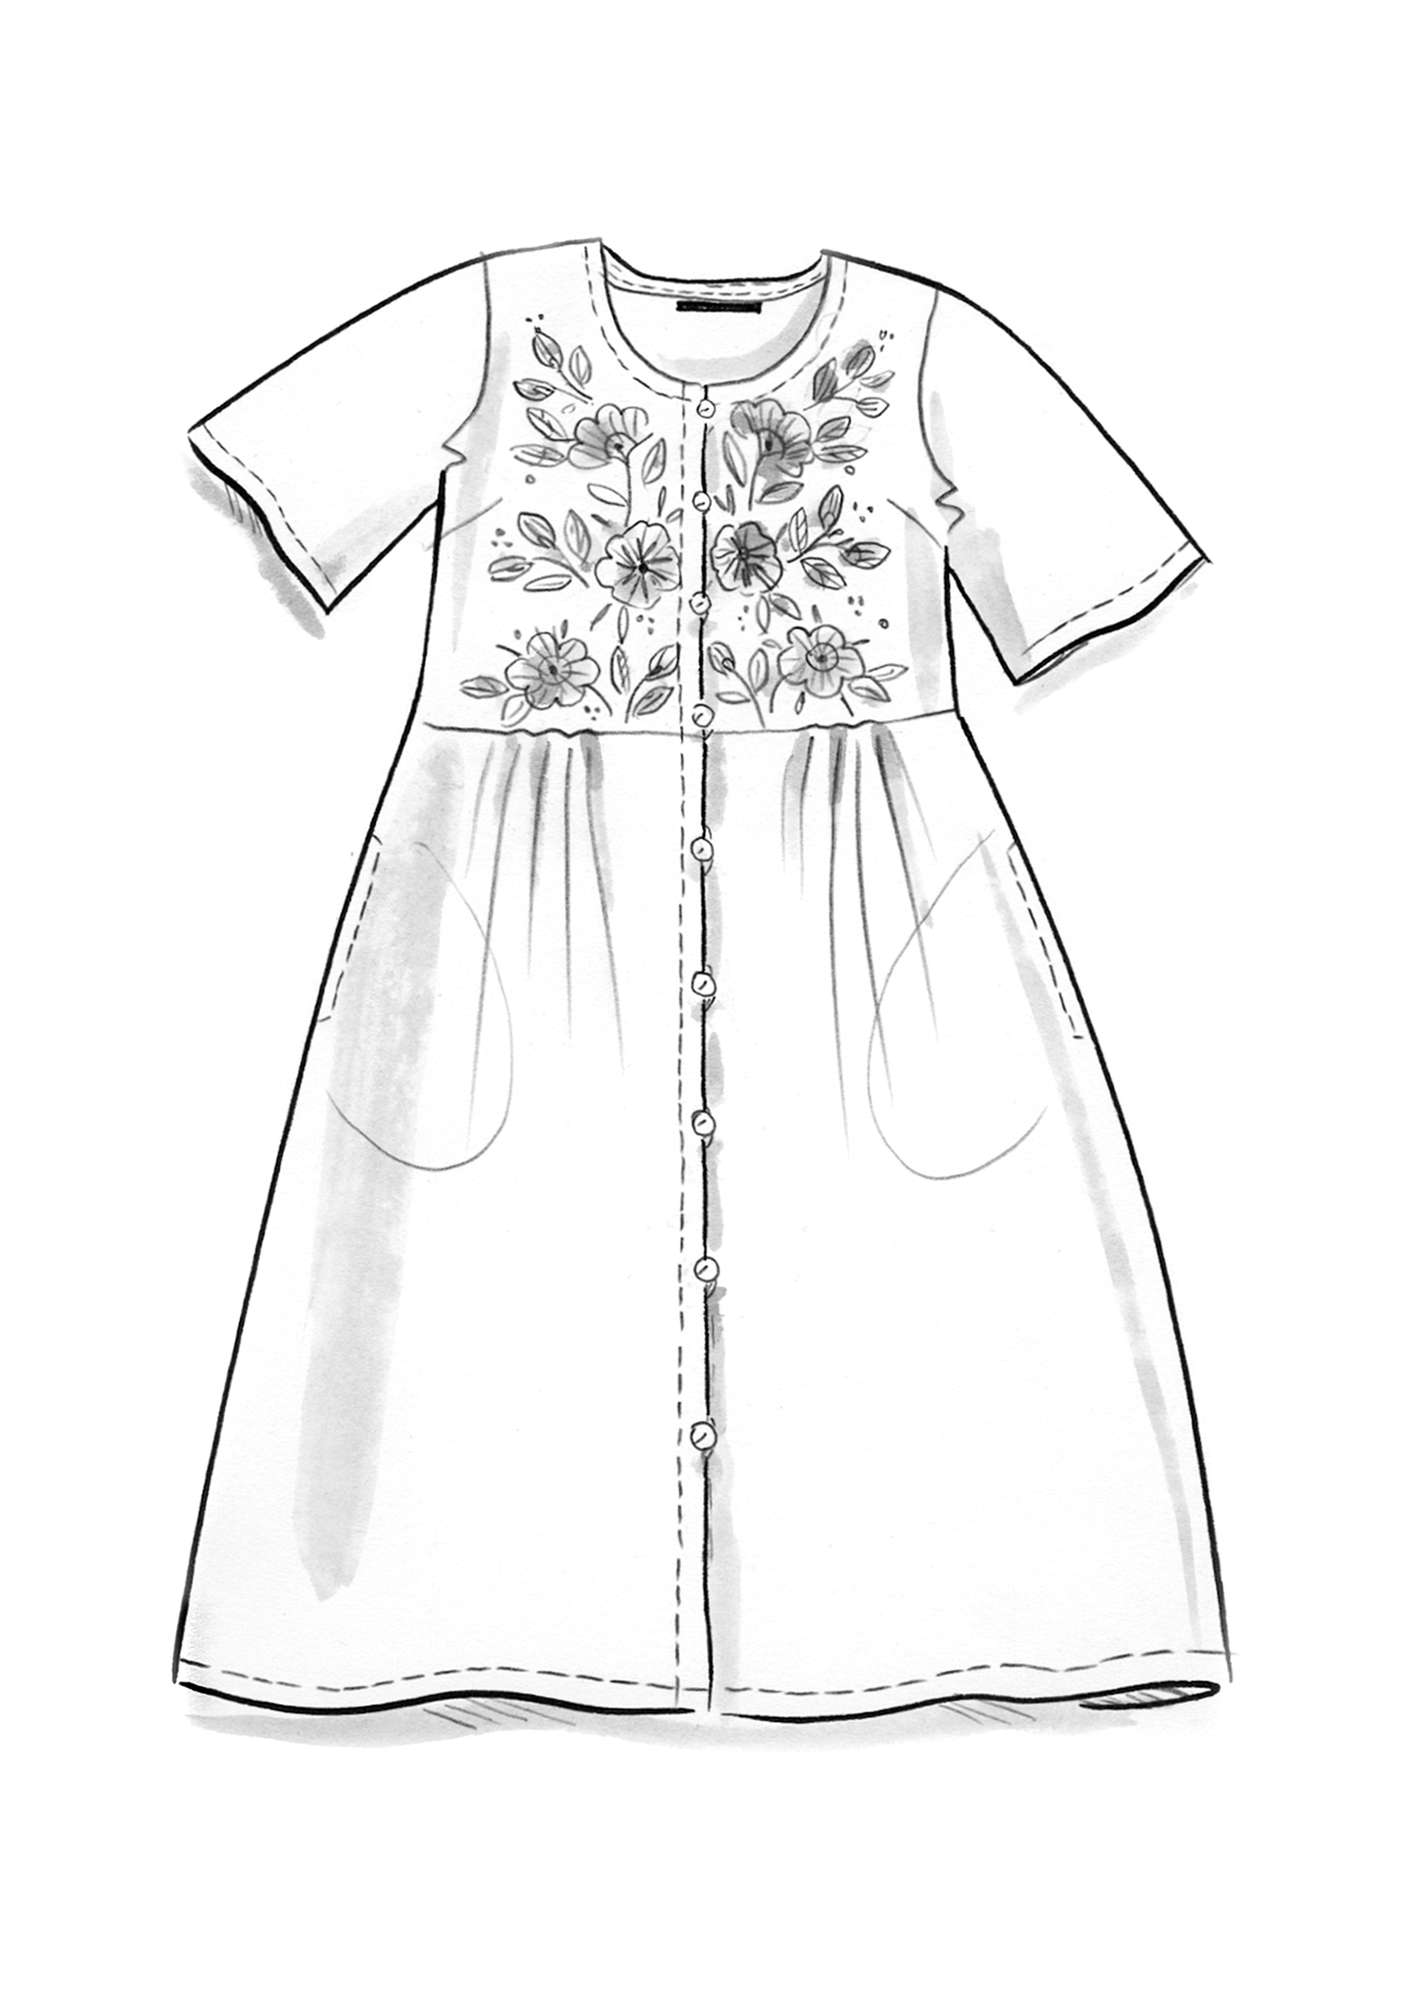 Vevd kjole «Margrethe» i økologisk bomull / silke svart